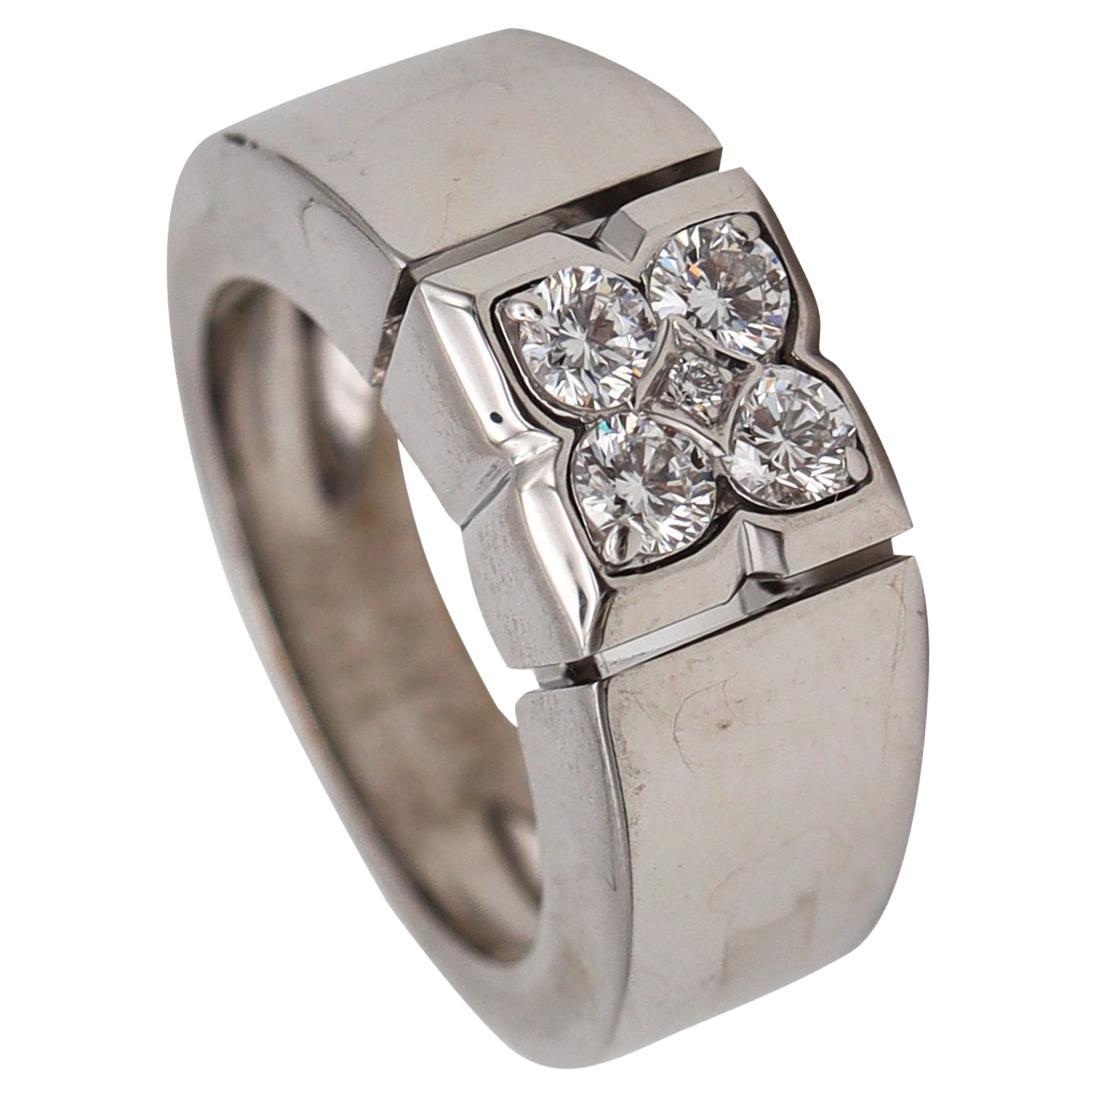 Van Cleefs & Arpels Paris Quatrefoil Ring in 18Kt White Gold with 5 VVS Diamonds For Sale